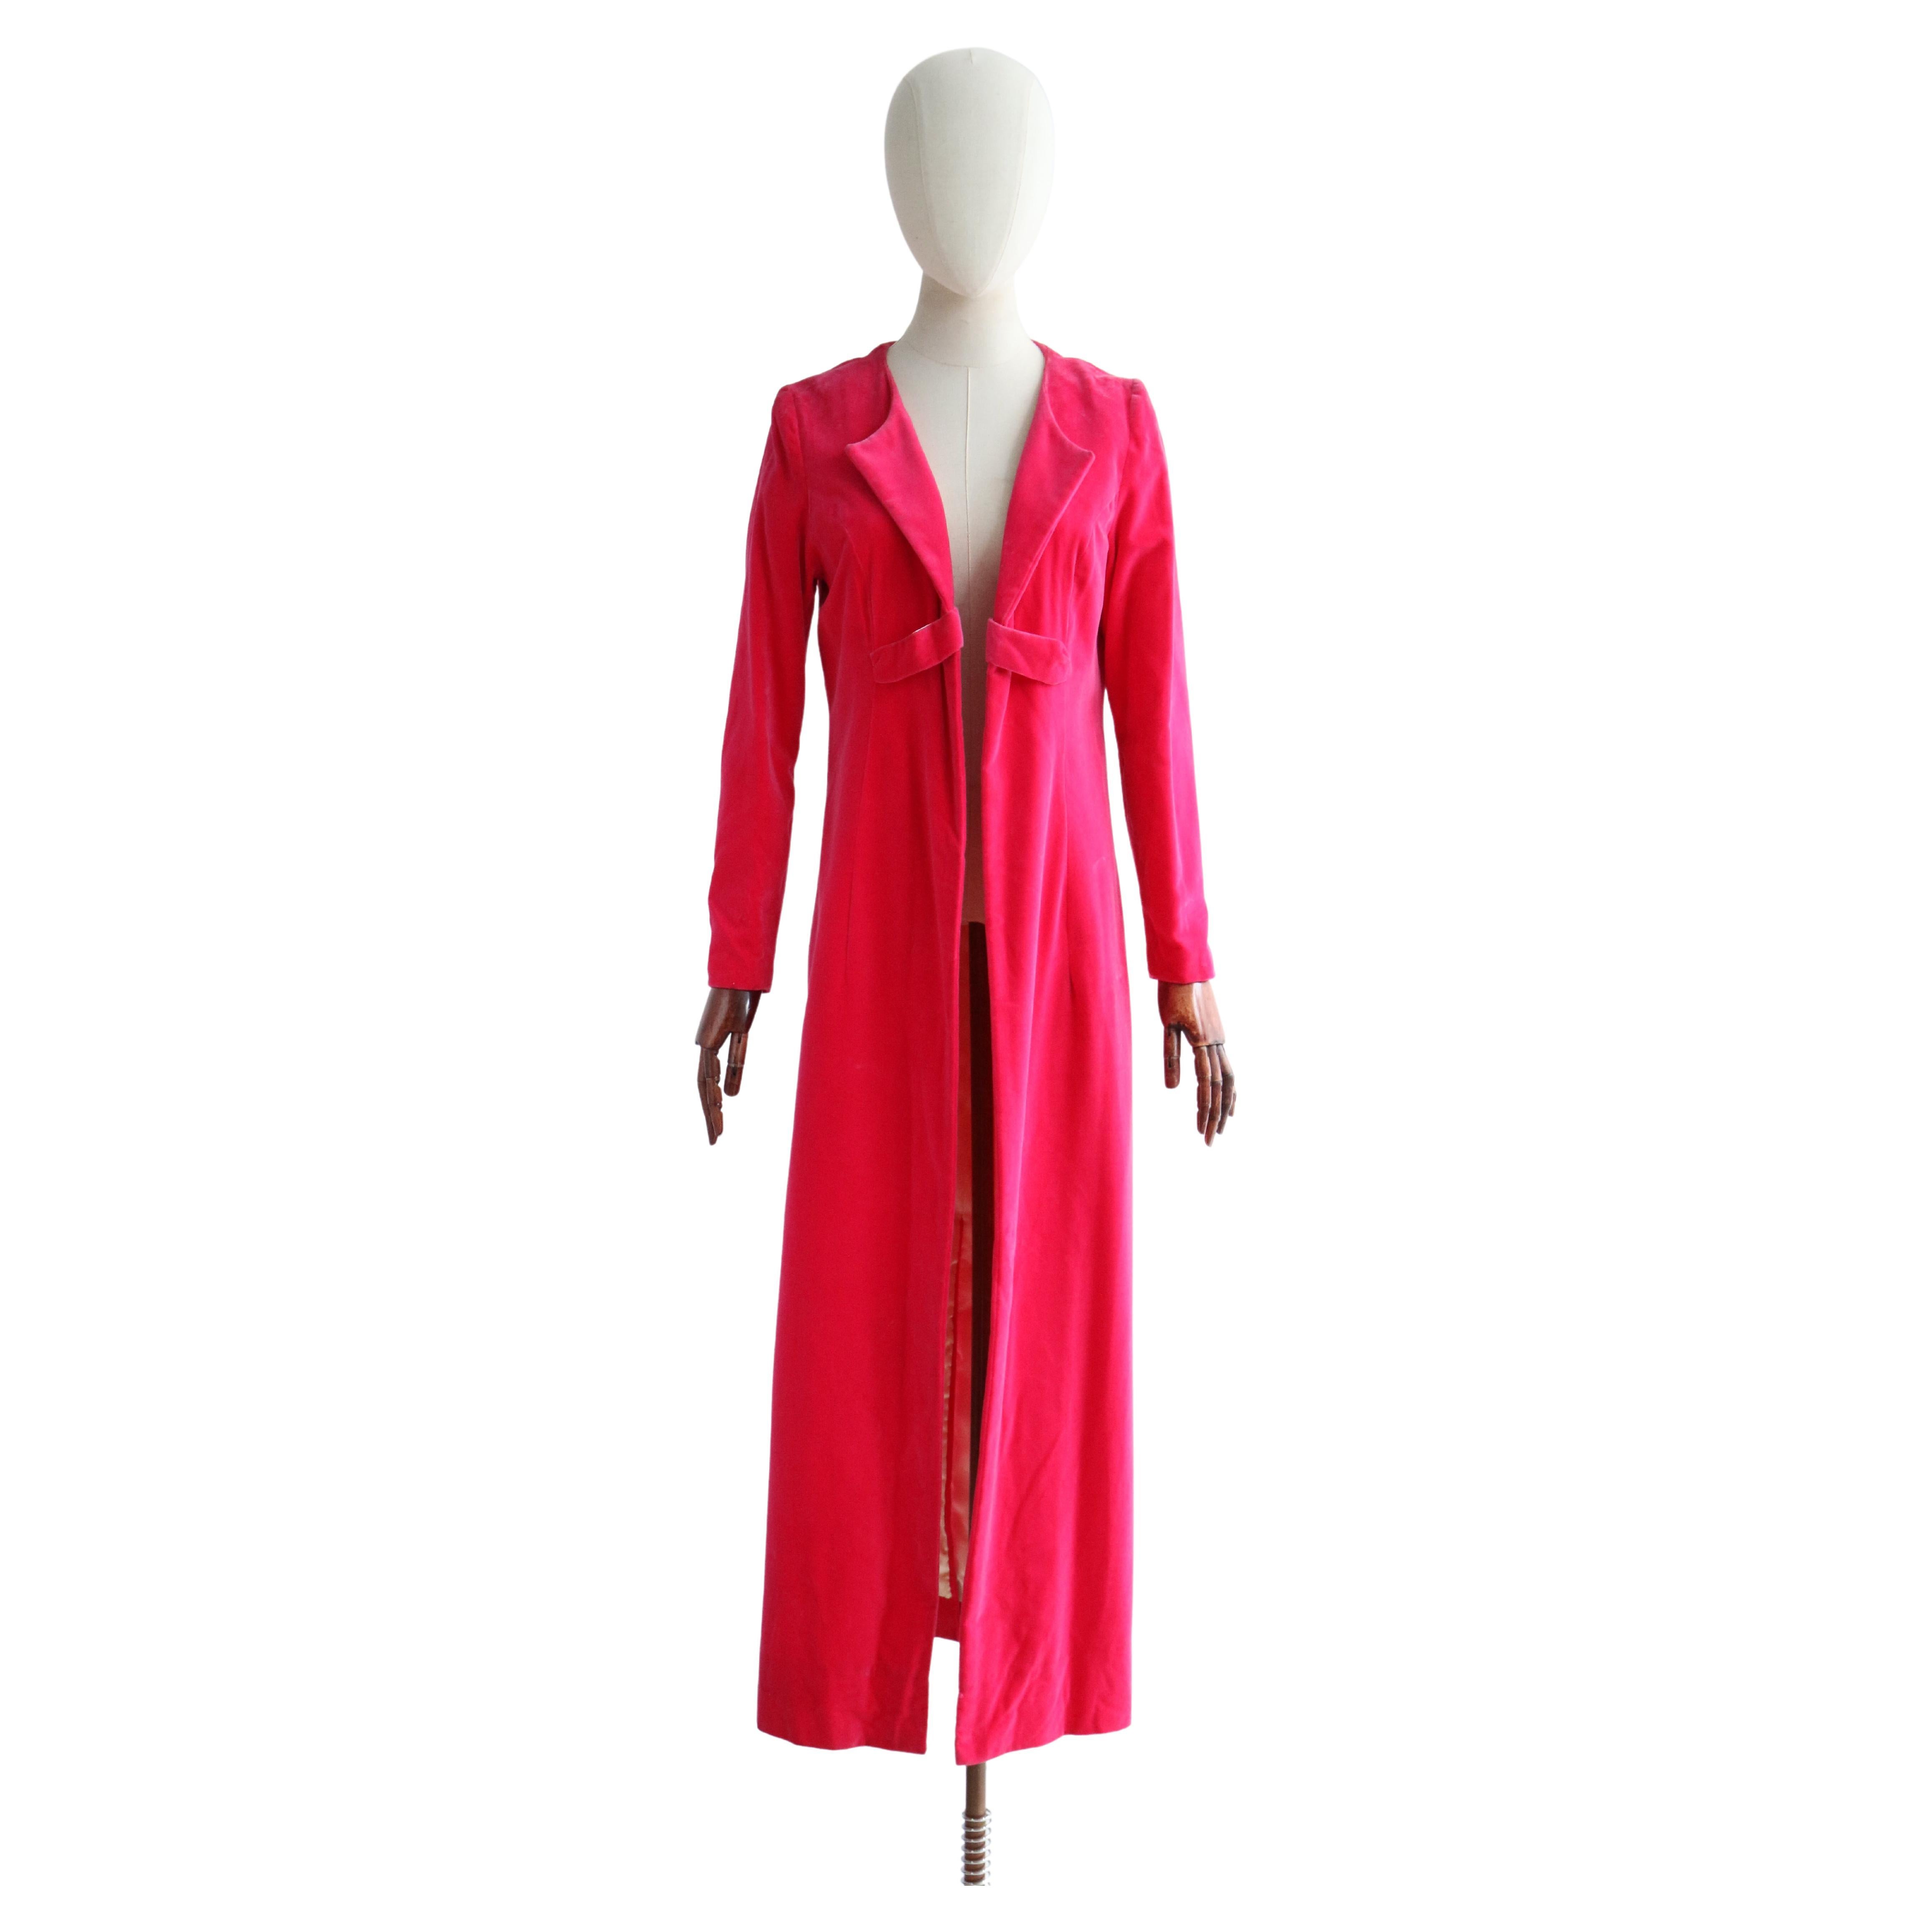 Vintage 1960's Hot Pink Velvet Evening Coat UK 12 US 8